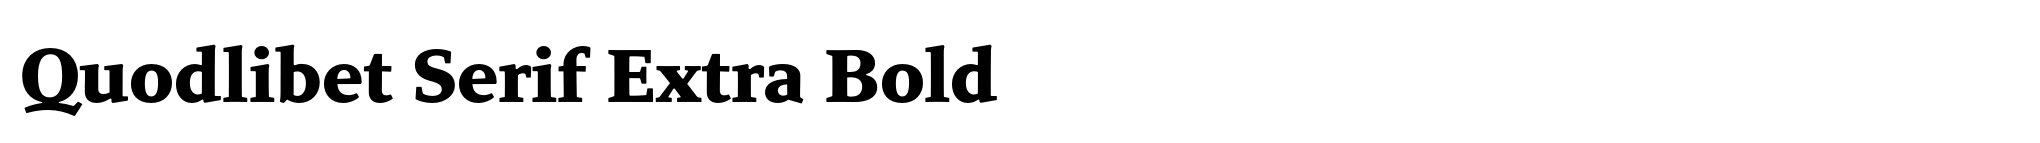 Quodlibet Serif Extra Bold image